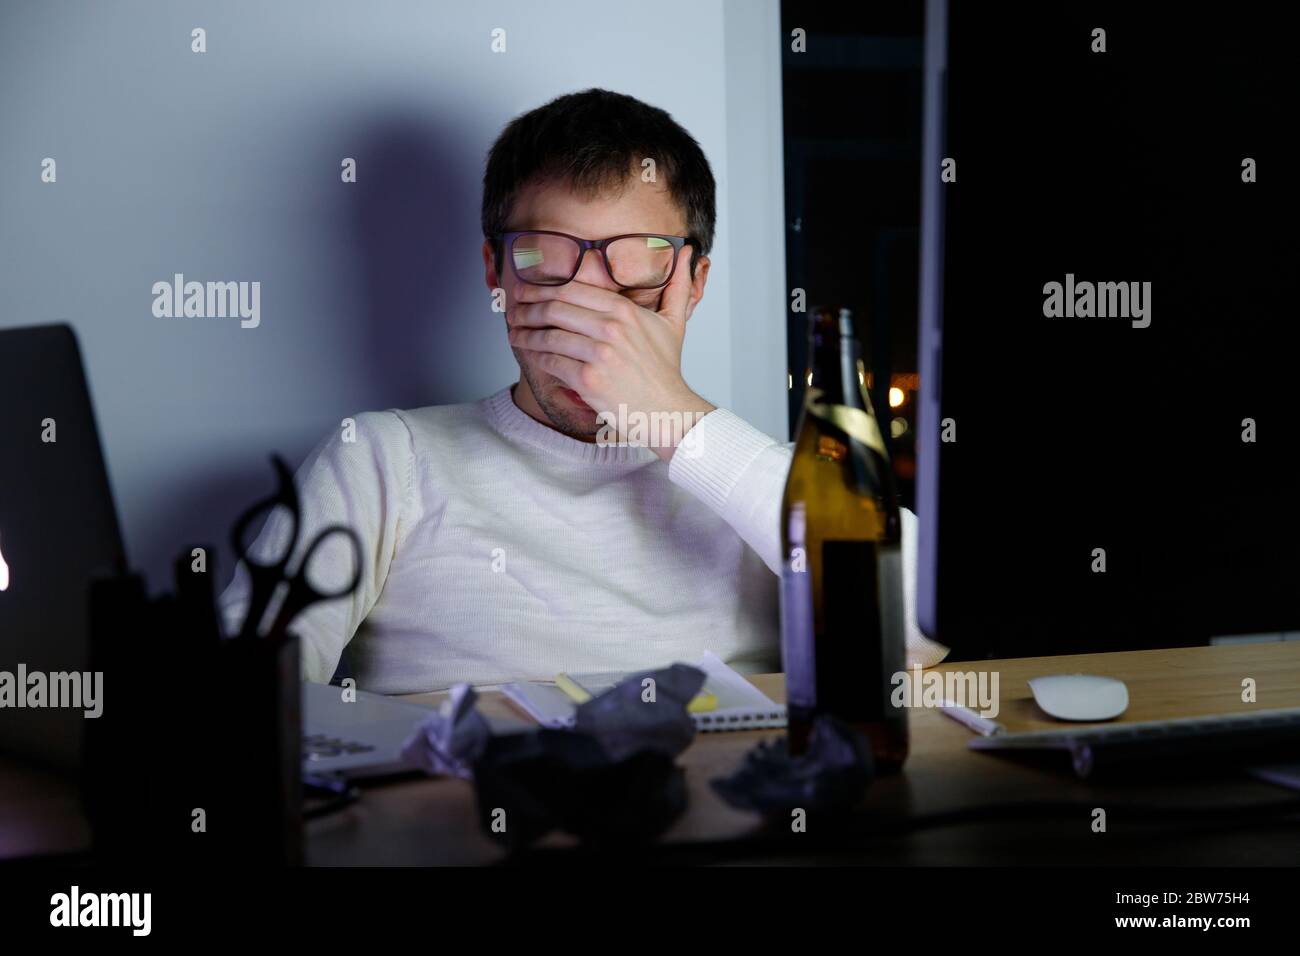 Erschöpfter junger Mann in Gläsern, der in einer späten Nacht bei der Arbeit Strapazen erlebt, trank ein Bier, um sich zu entspannen, schläft vor Müdigkeit ein. Überarbeit, Faulheit, Stockfoto